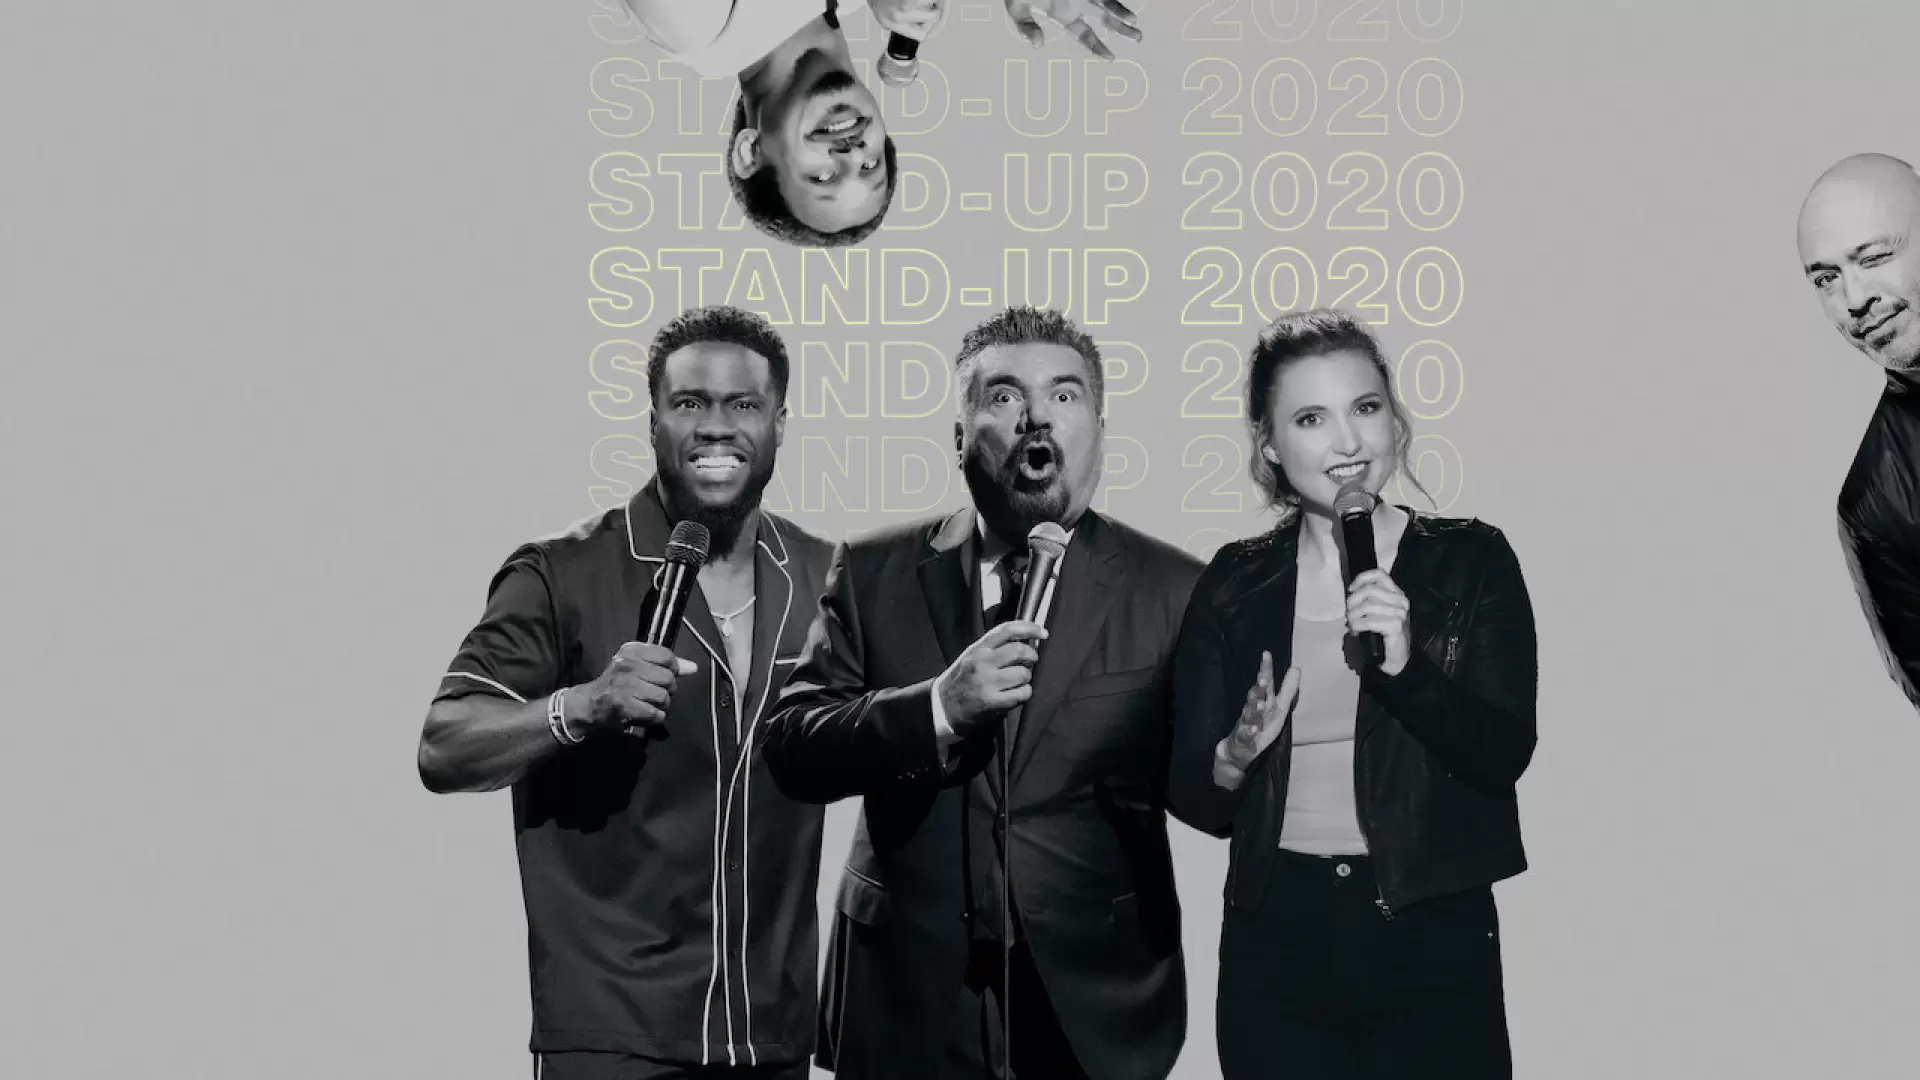 دانلود فیلم Best of Stand-up 2020 2020